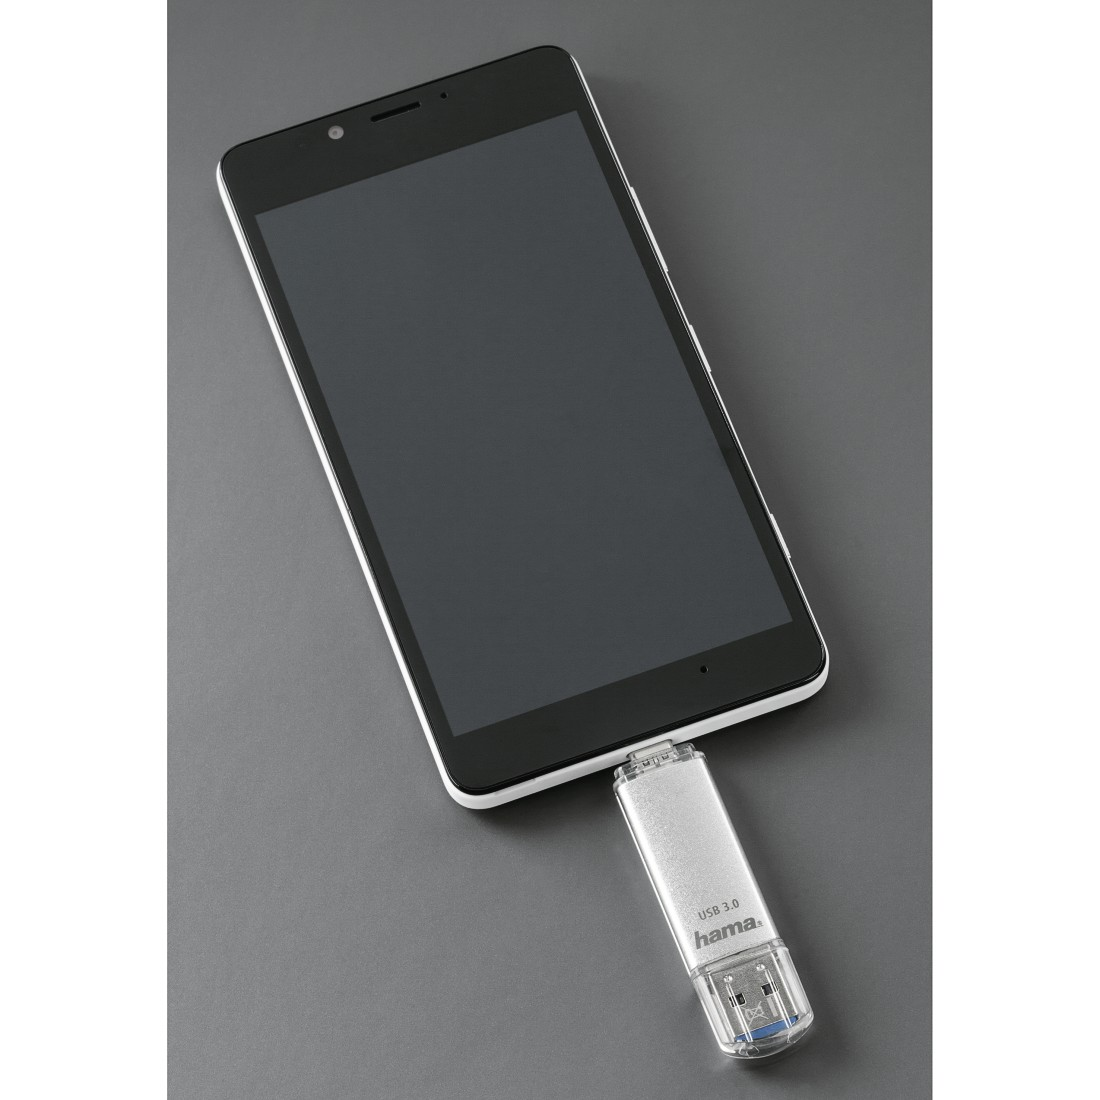 HAMA C-Laeta USB-Stick, 128 GB, 40 MB/s, Silber